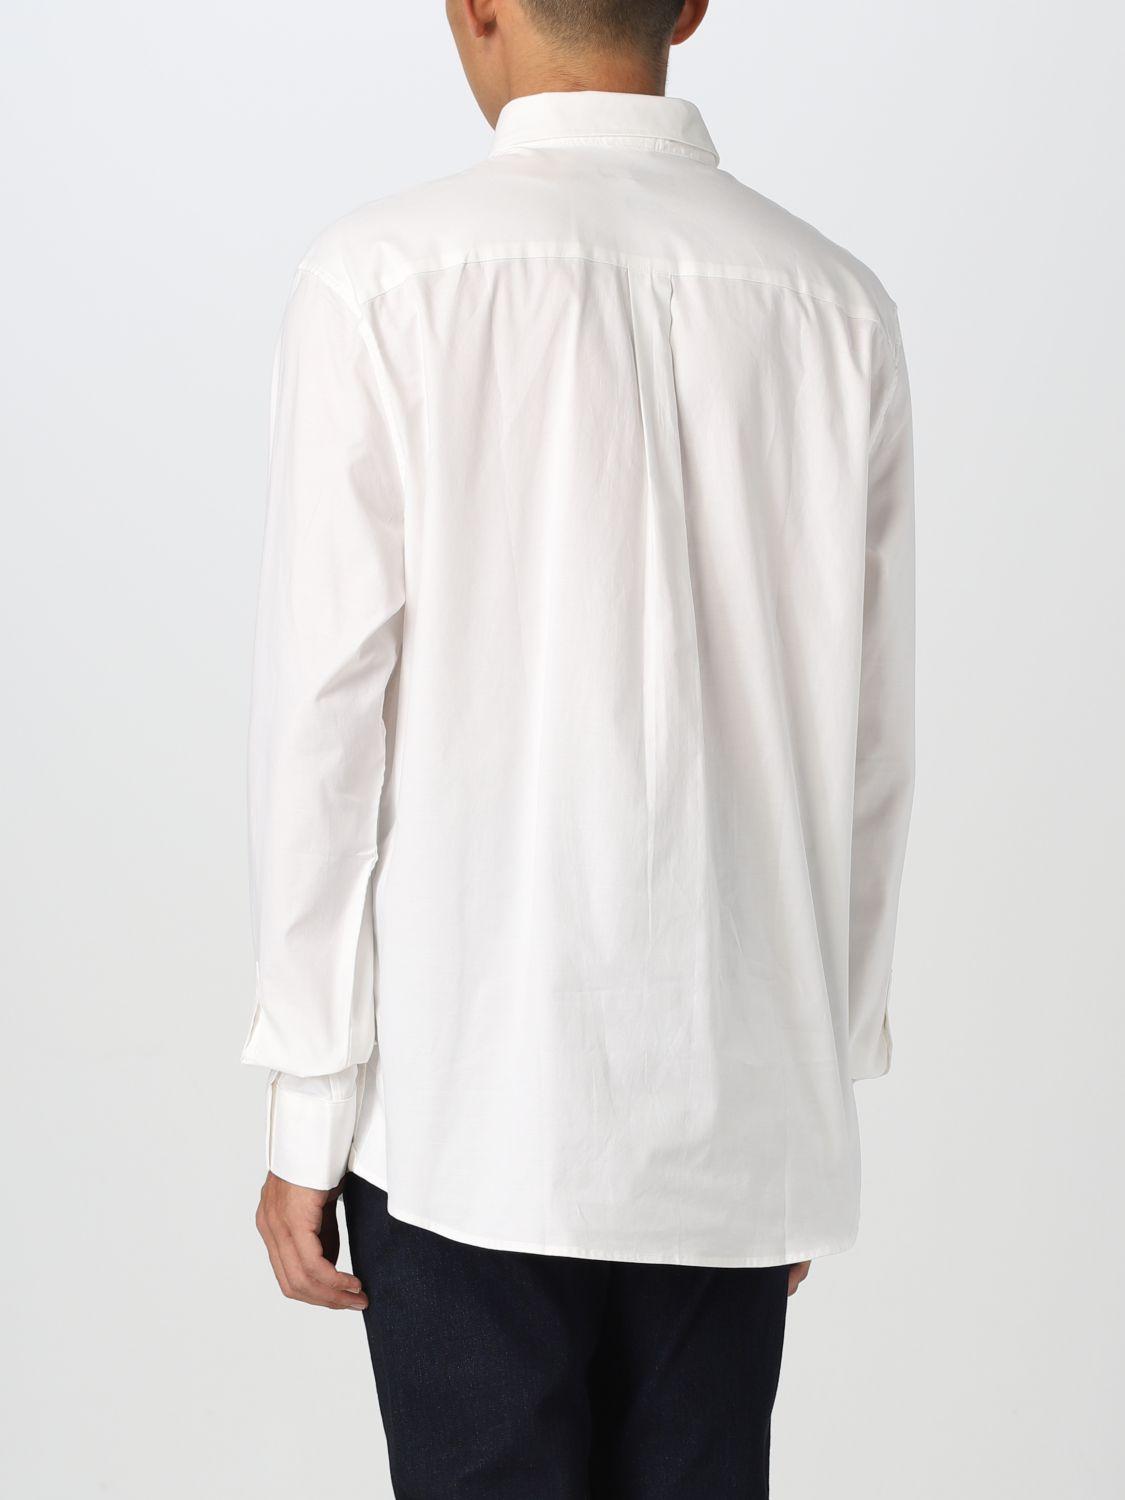 Michael Kors Shirt in White for Men | Lyst